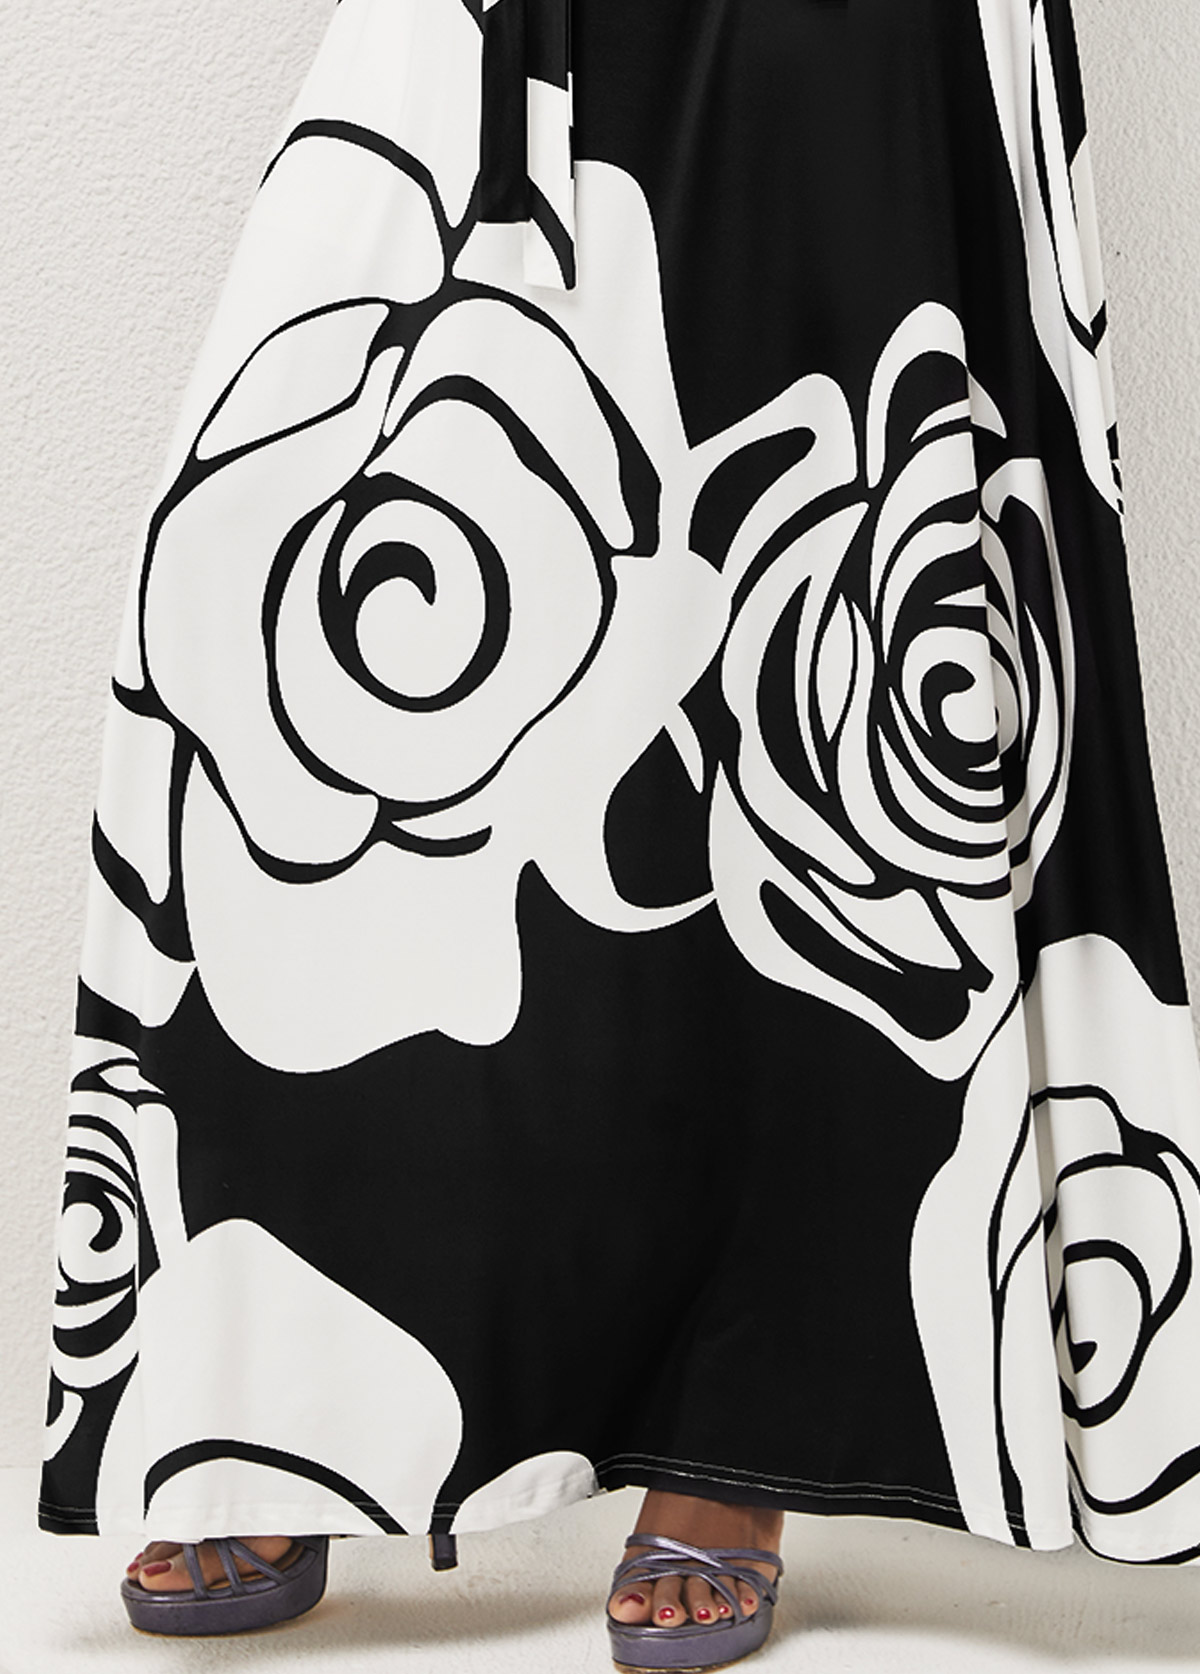 V Neck Floral Print Belted Black A Line Dress